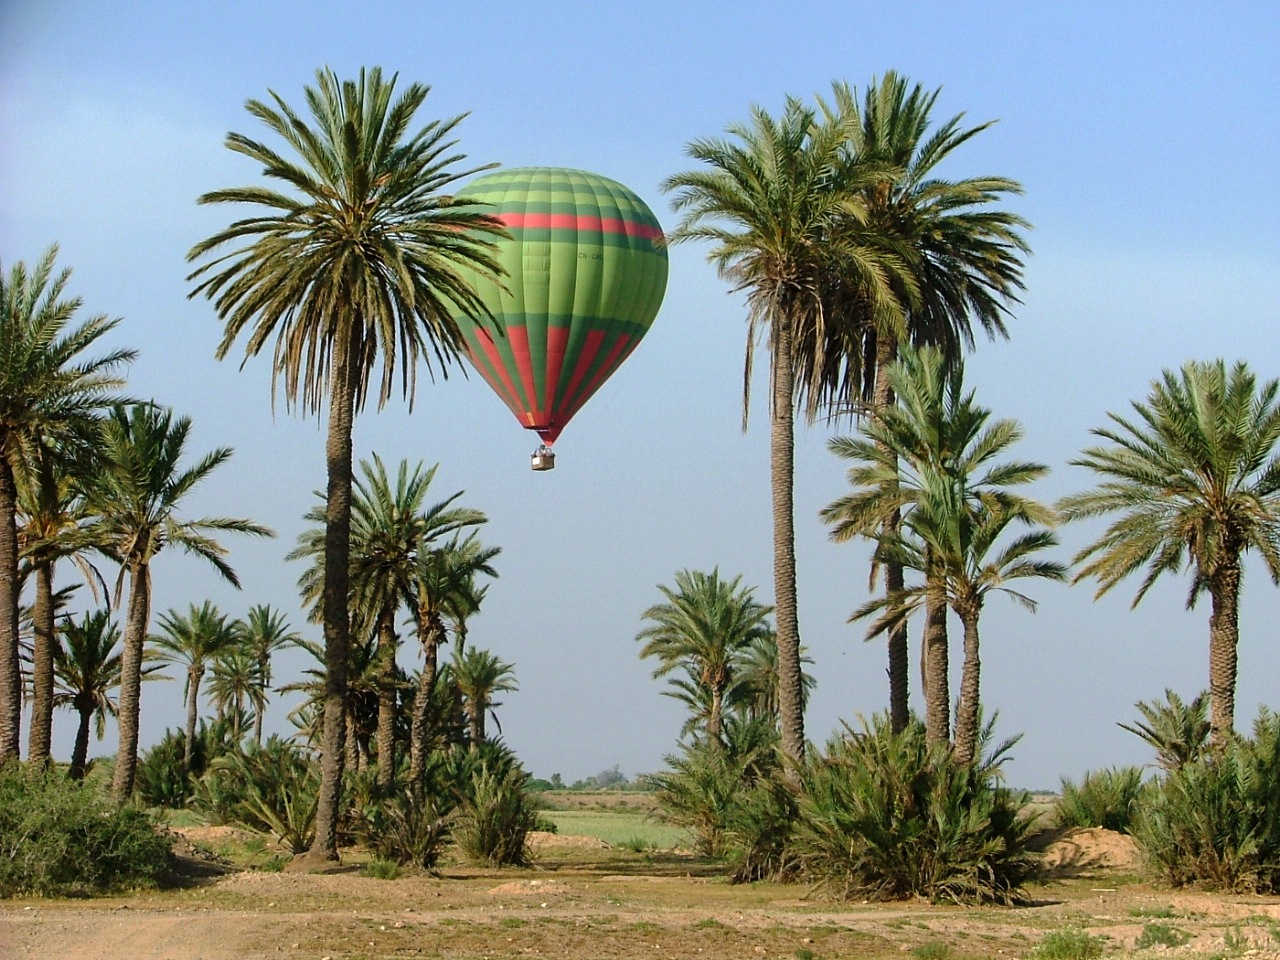 ACTIVIDAD EN GLOBO AEROSTATICO EN MARRAKECH  :, activities in Marrakech